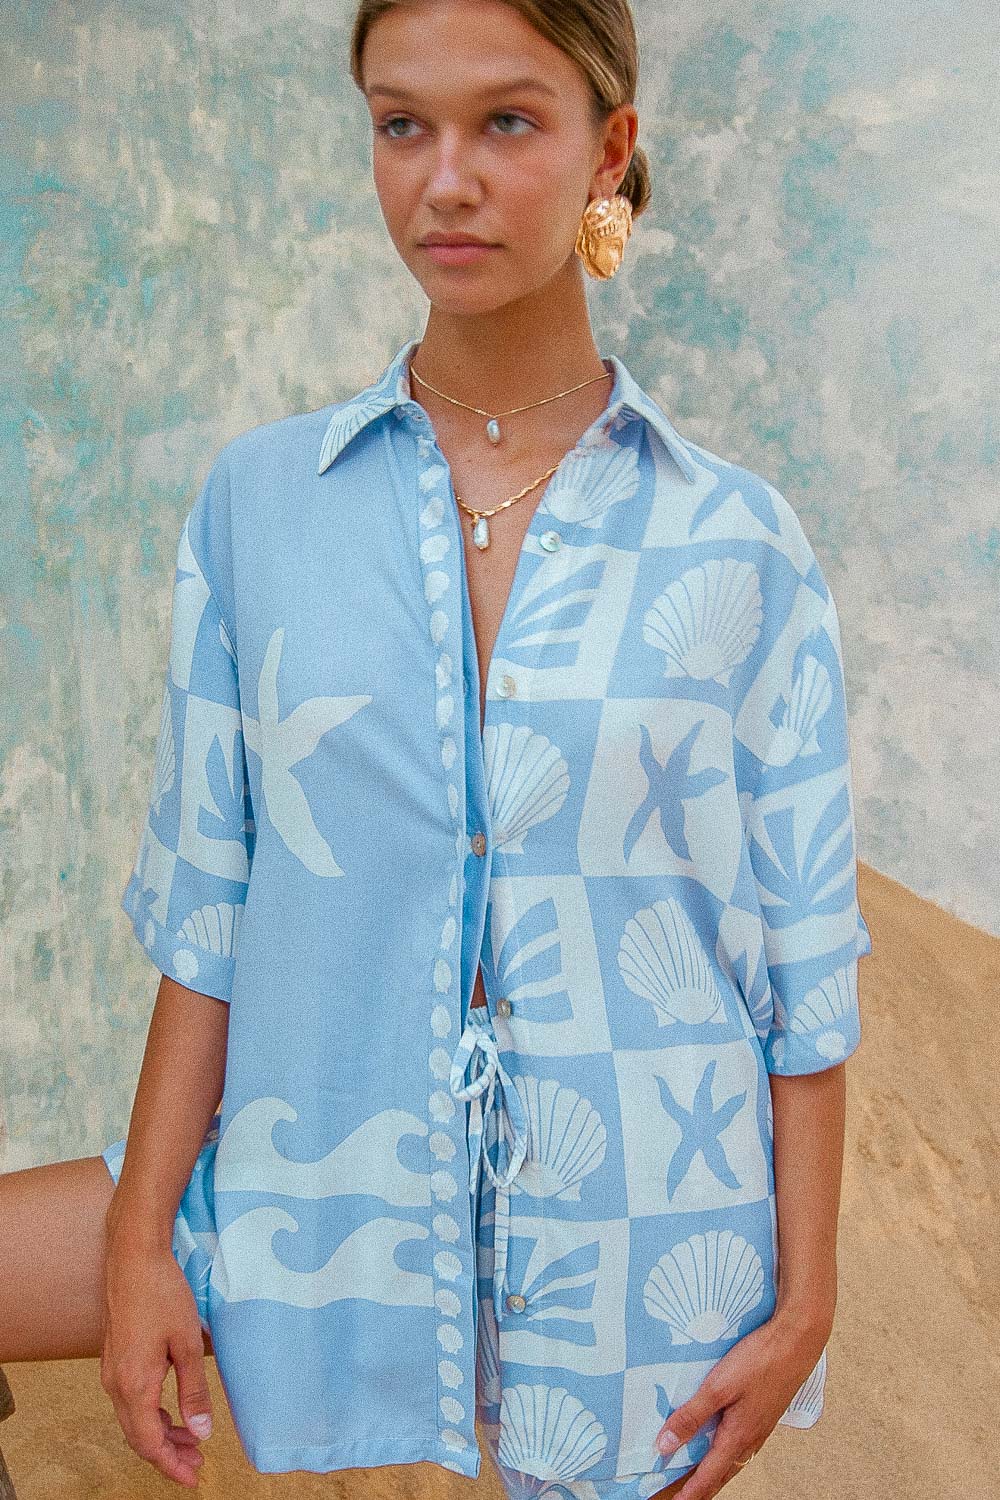 Port Villa Shirt Port Villa Shirt blue shell print blouse matching coord summer outfit set